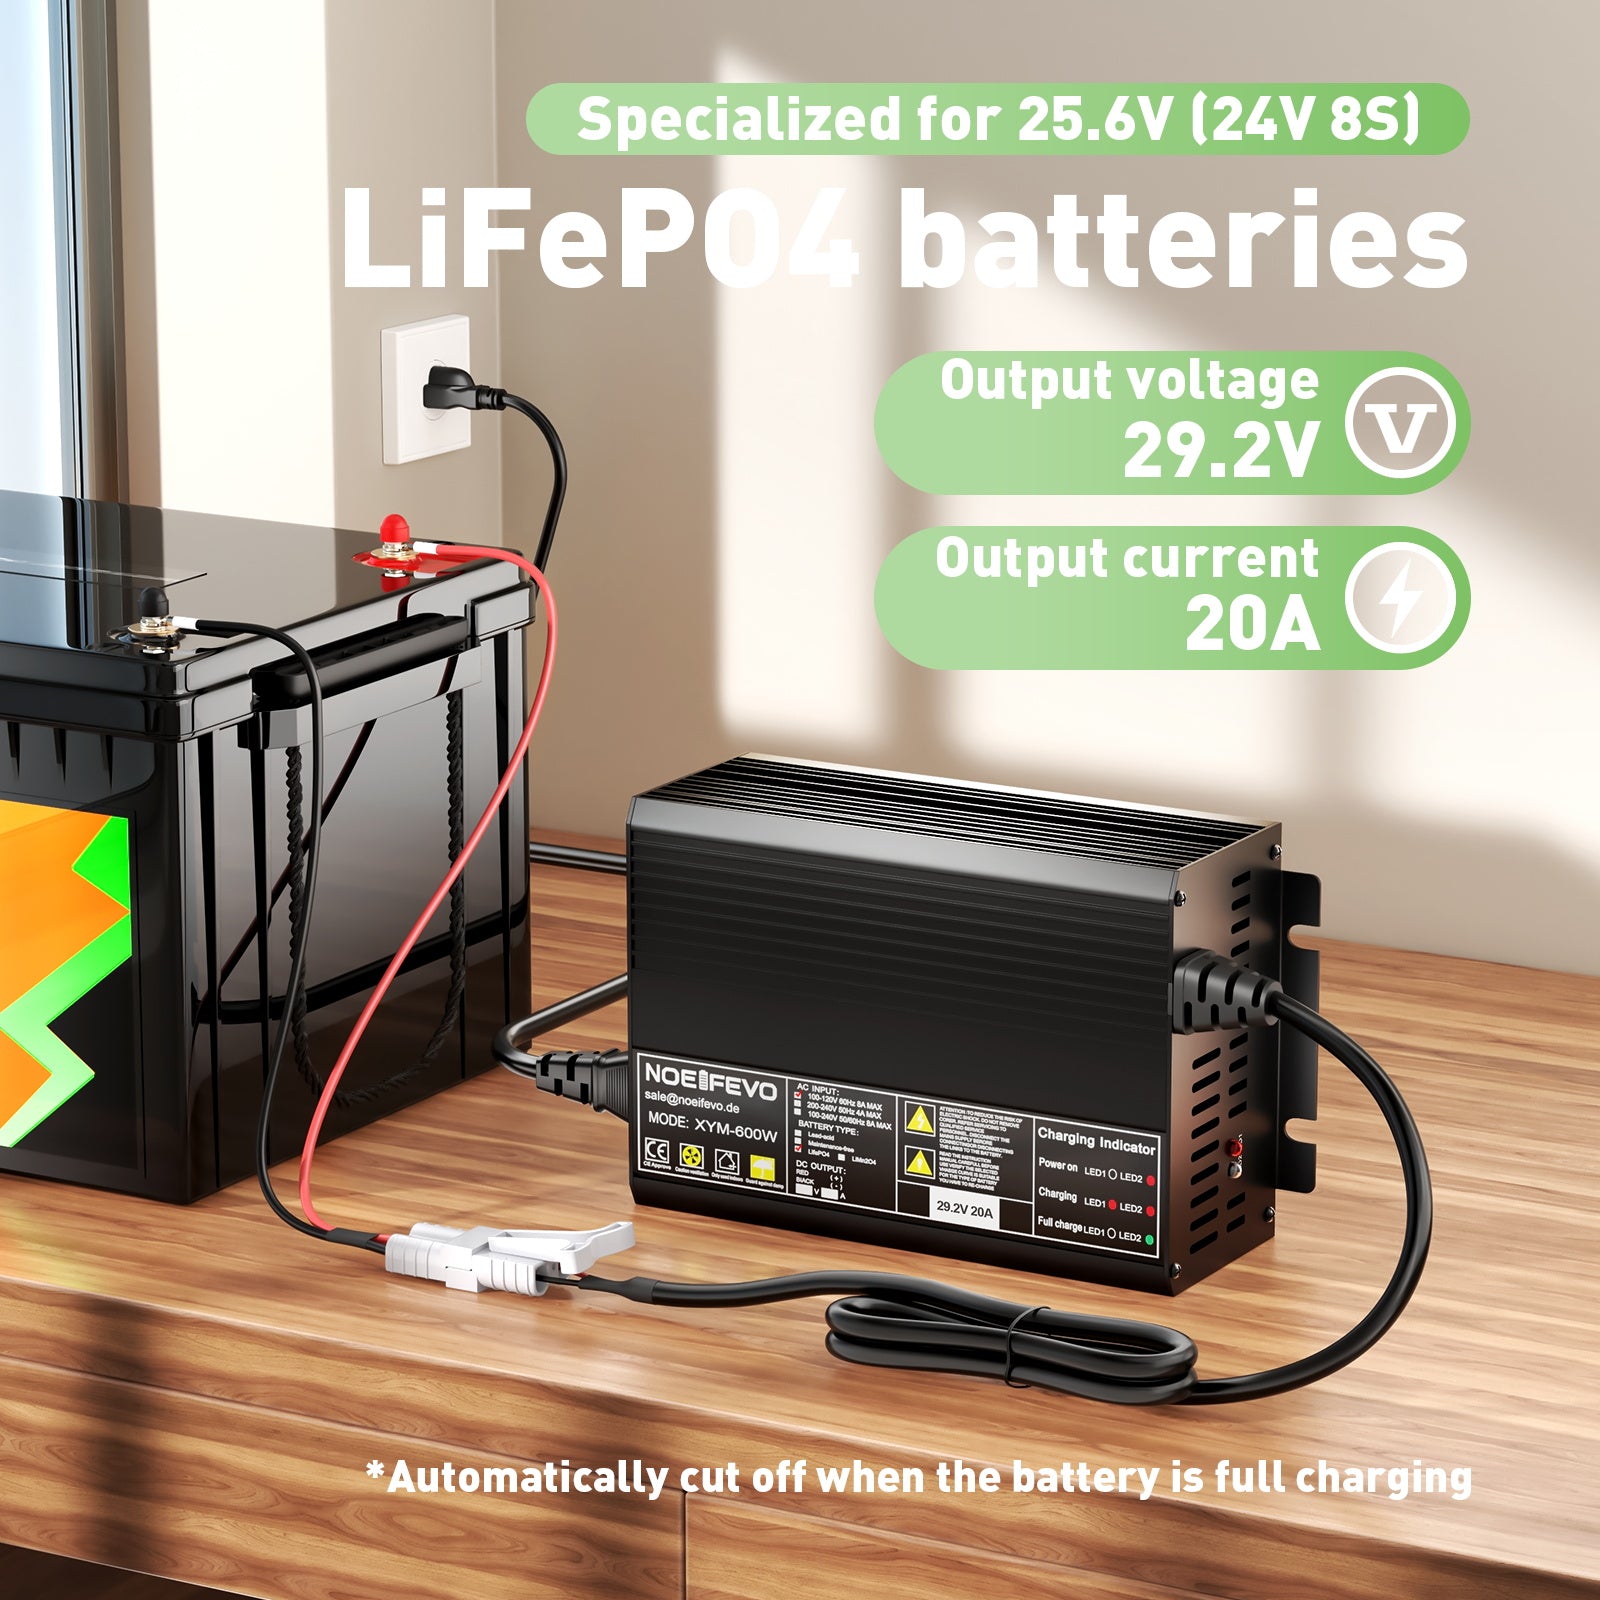 NOEIFEVO 29.2V 20A LiFePO4 battery charger For 24V 25.6V 8S LFP battery